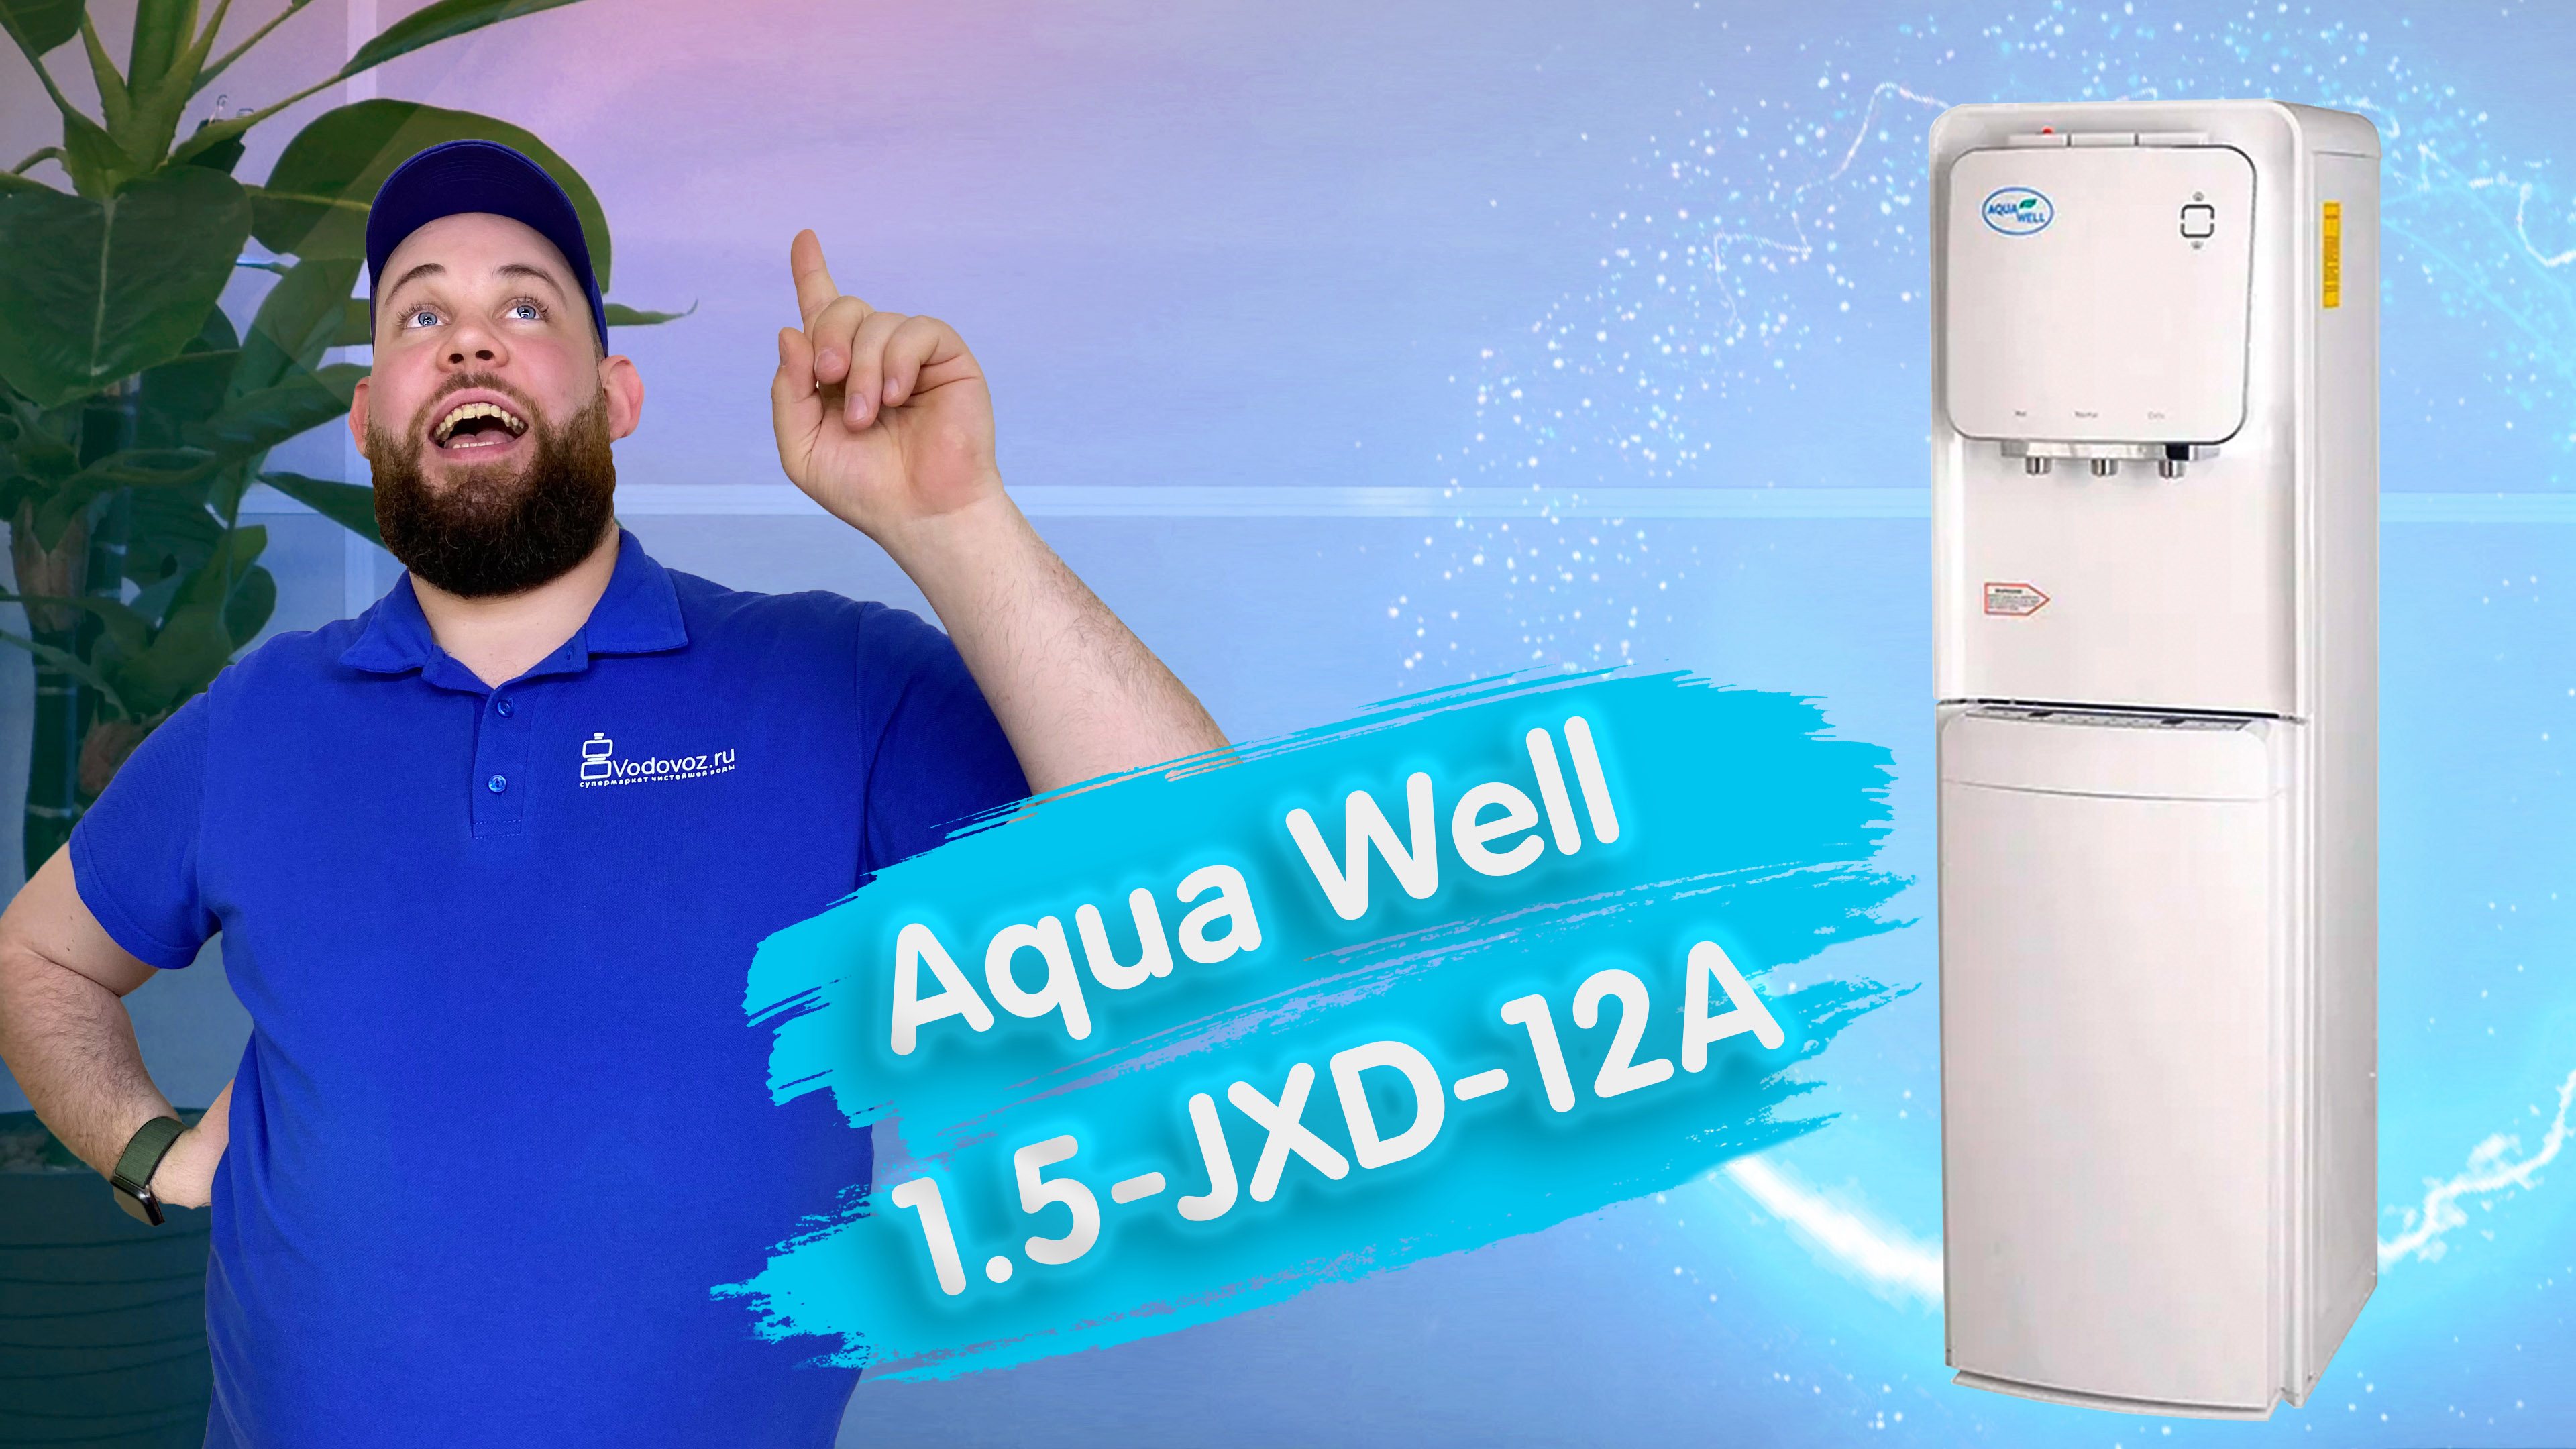 Обзор кулера для воды Aqua Well 1.5-JXD-12A